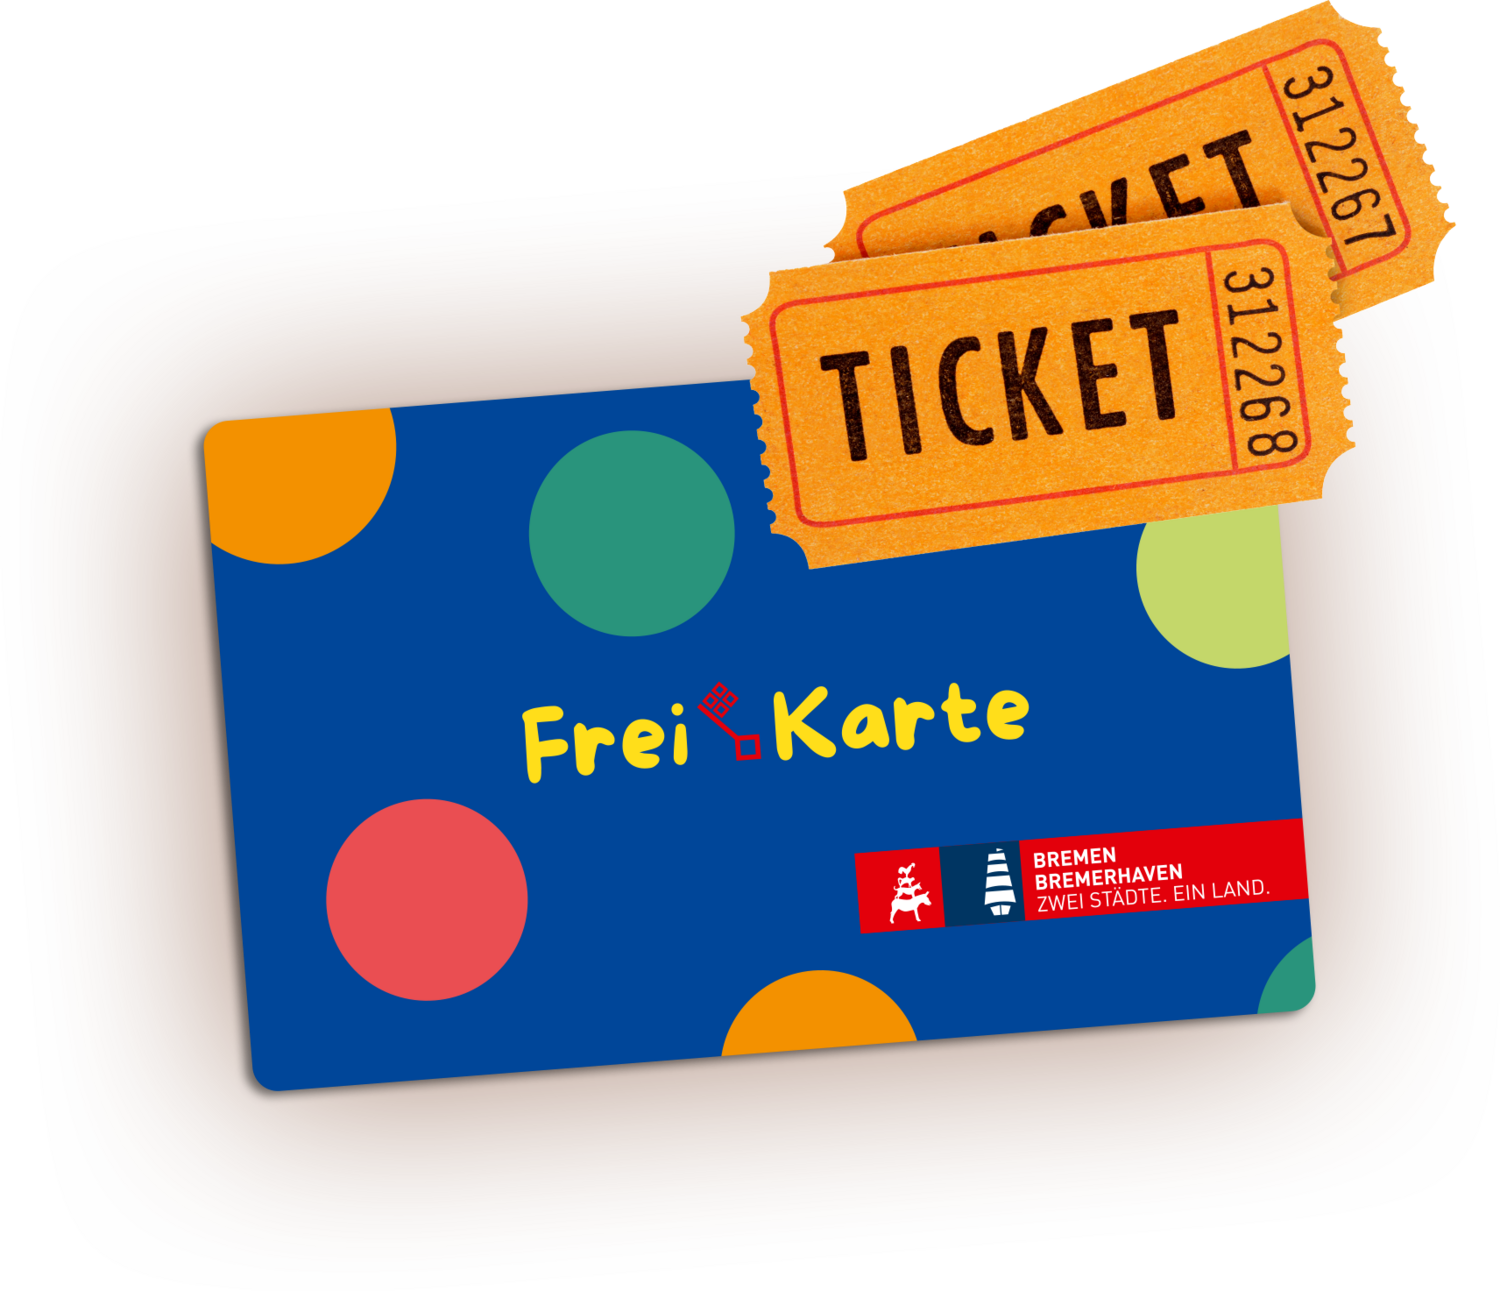 Abbildung der Freikarte Bremen 